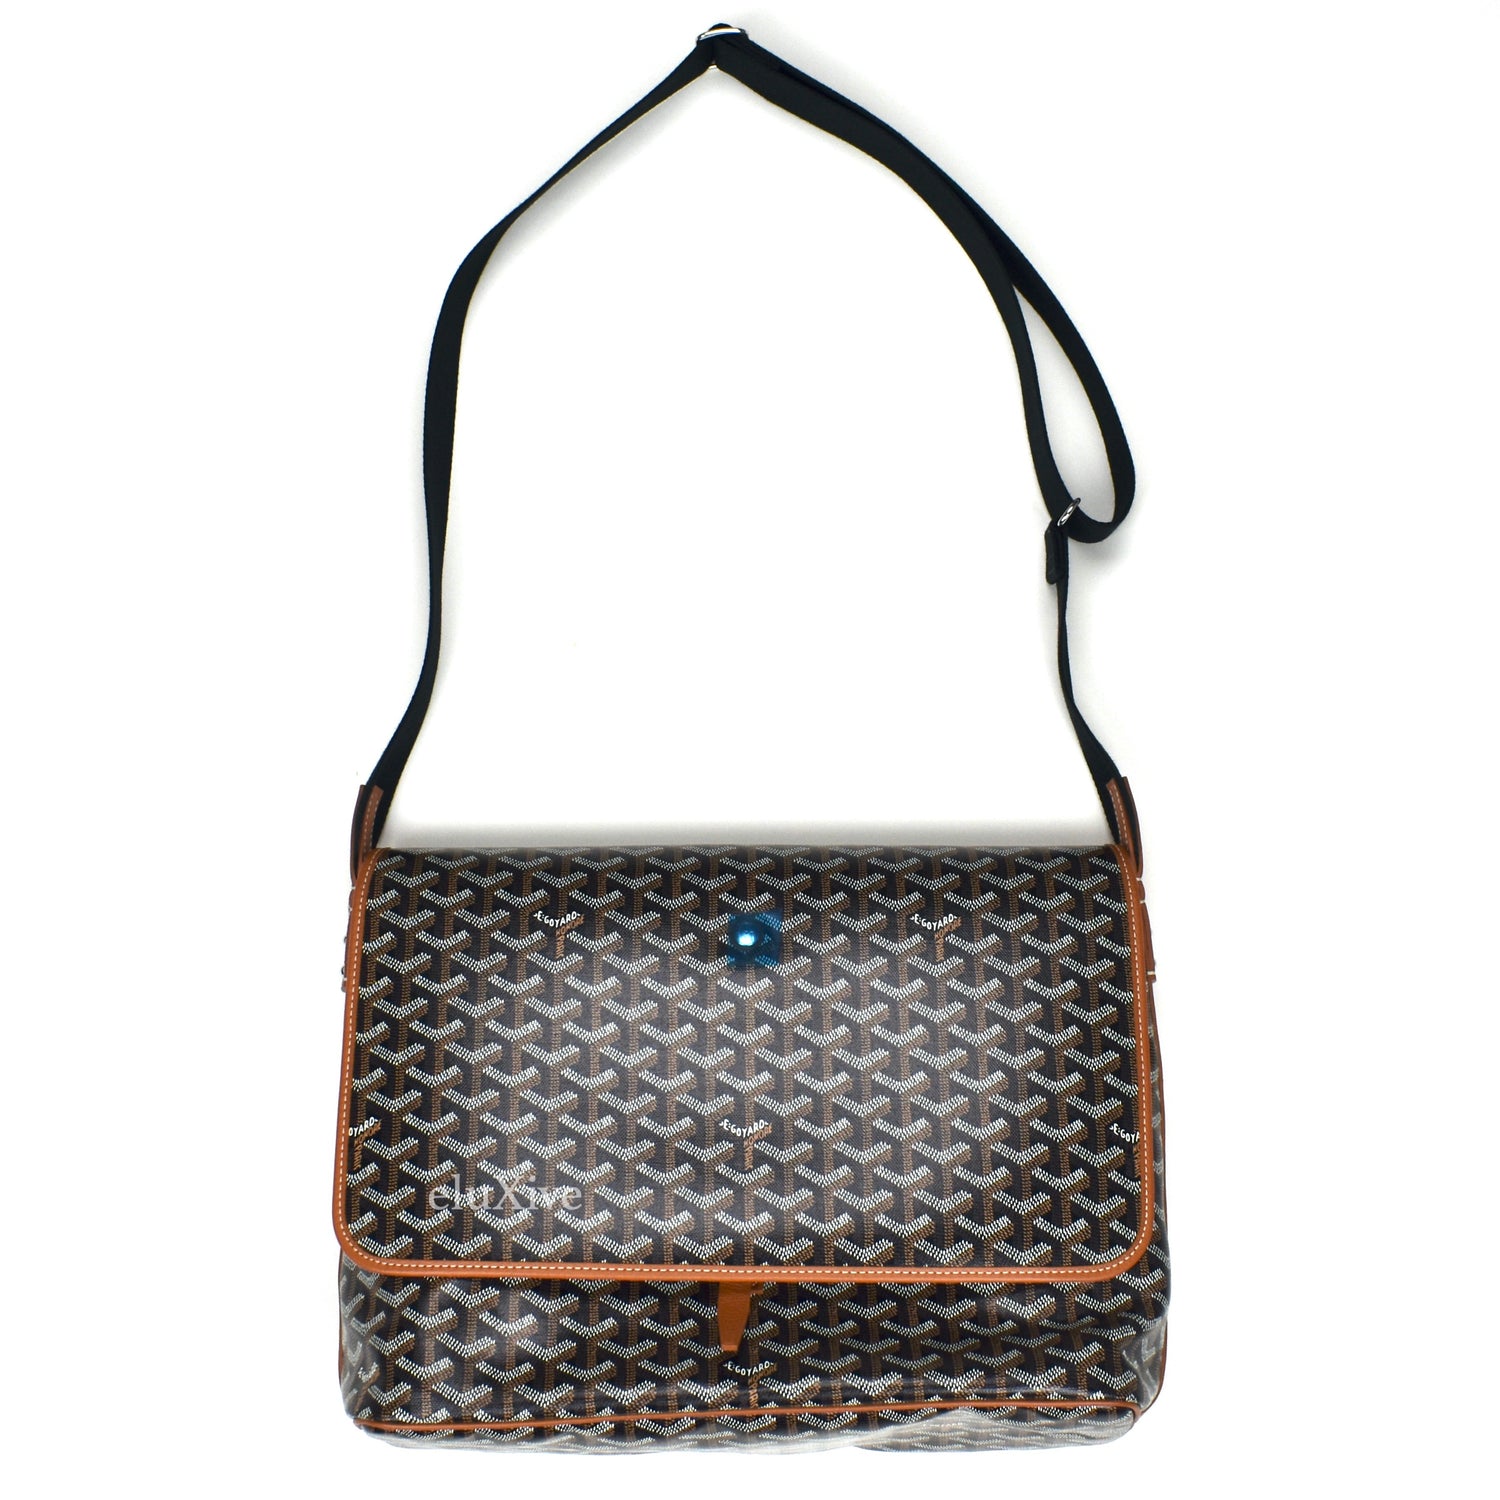 goyard laptop bag - Buy goyard laptop bag at Best Price in Malaysia